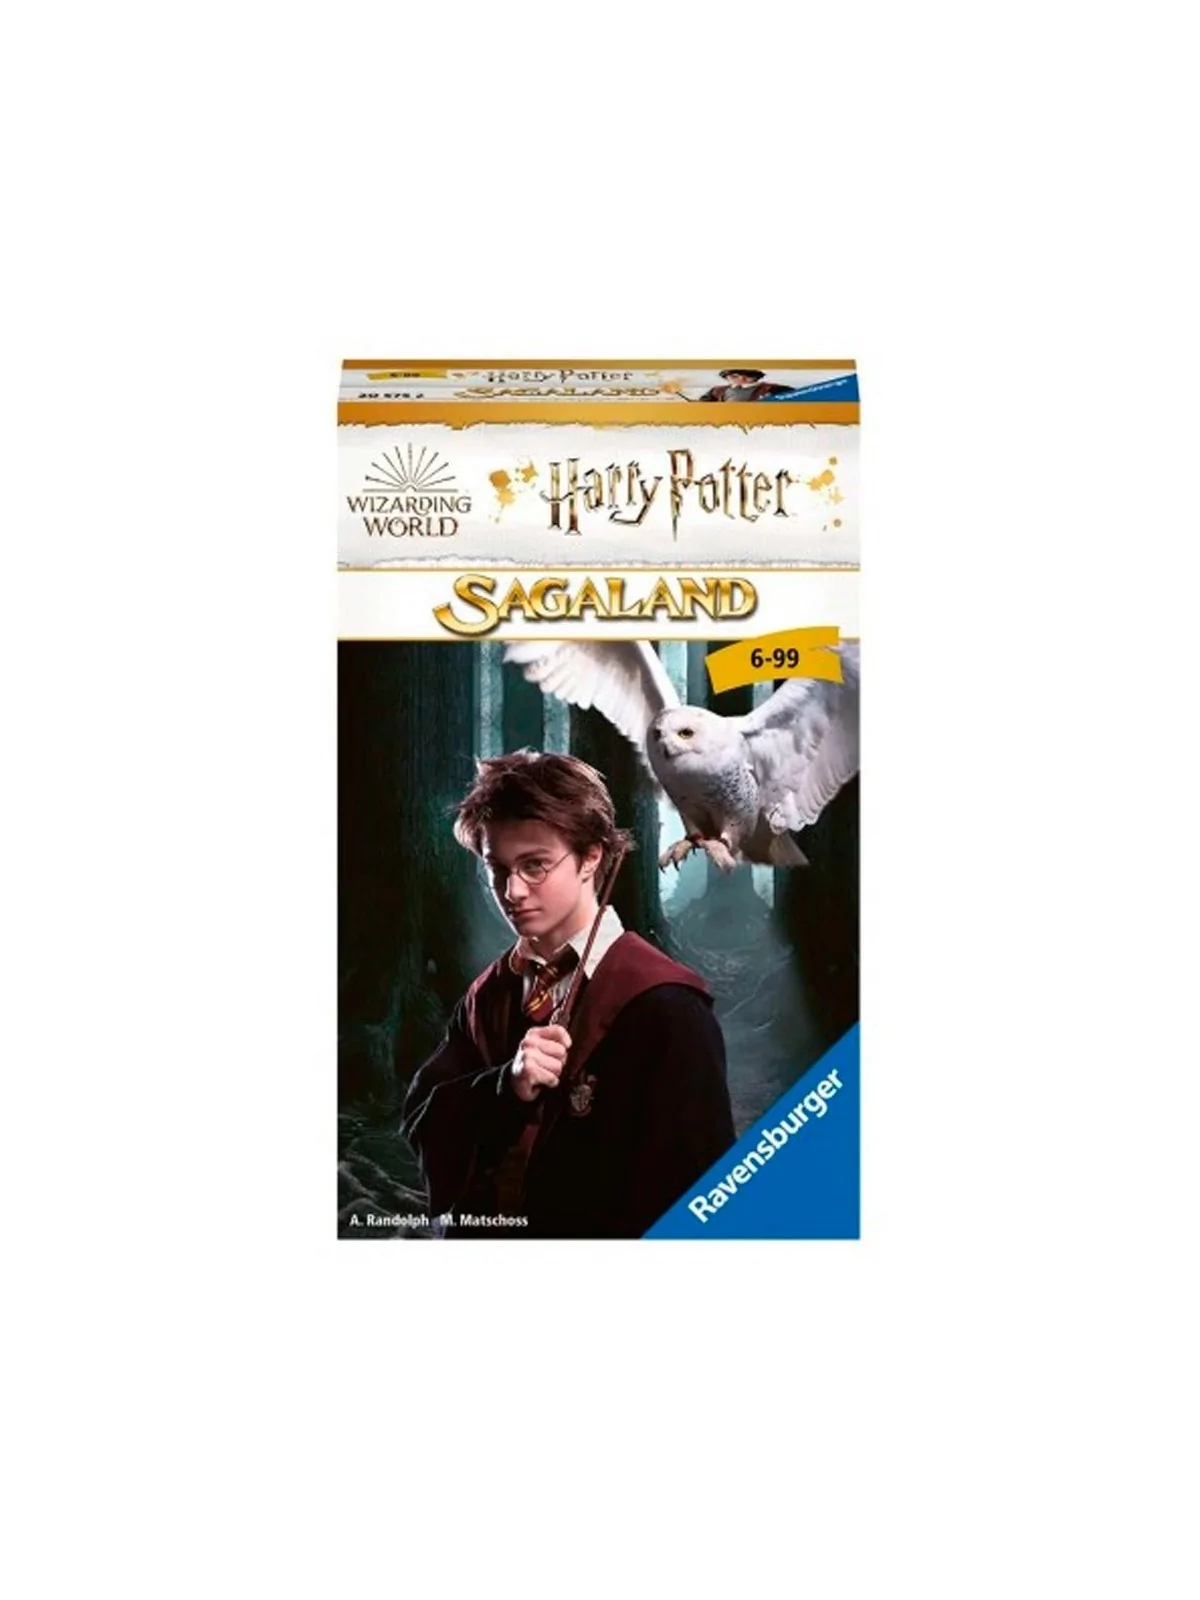 Comprar Harry Potter (Version Travel) barato al mejor precio 6,31 € de